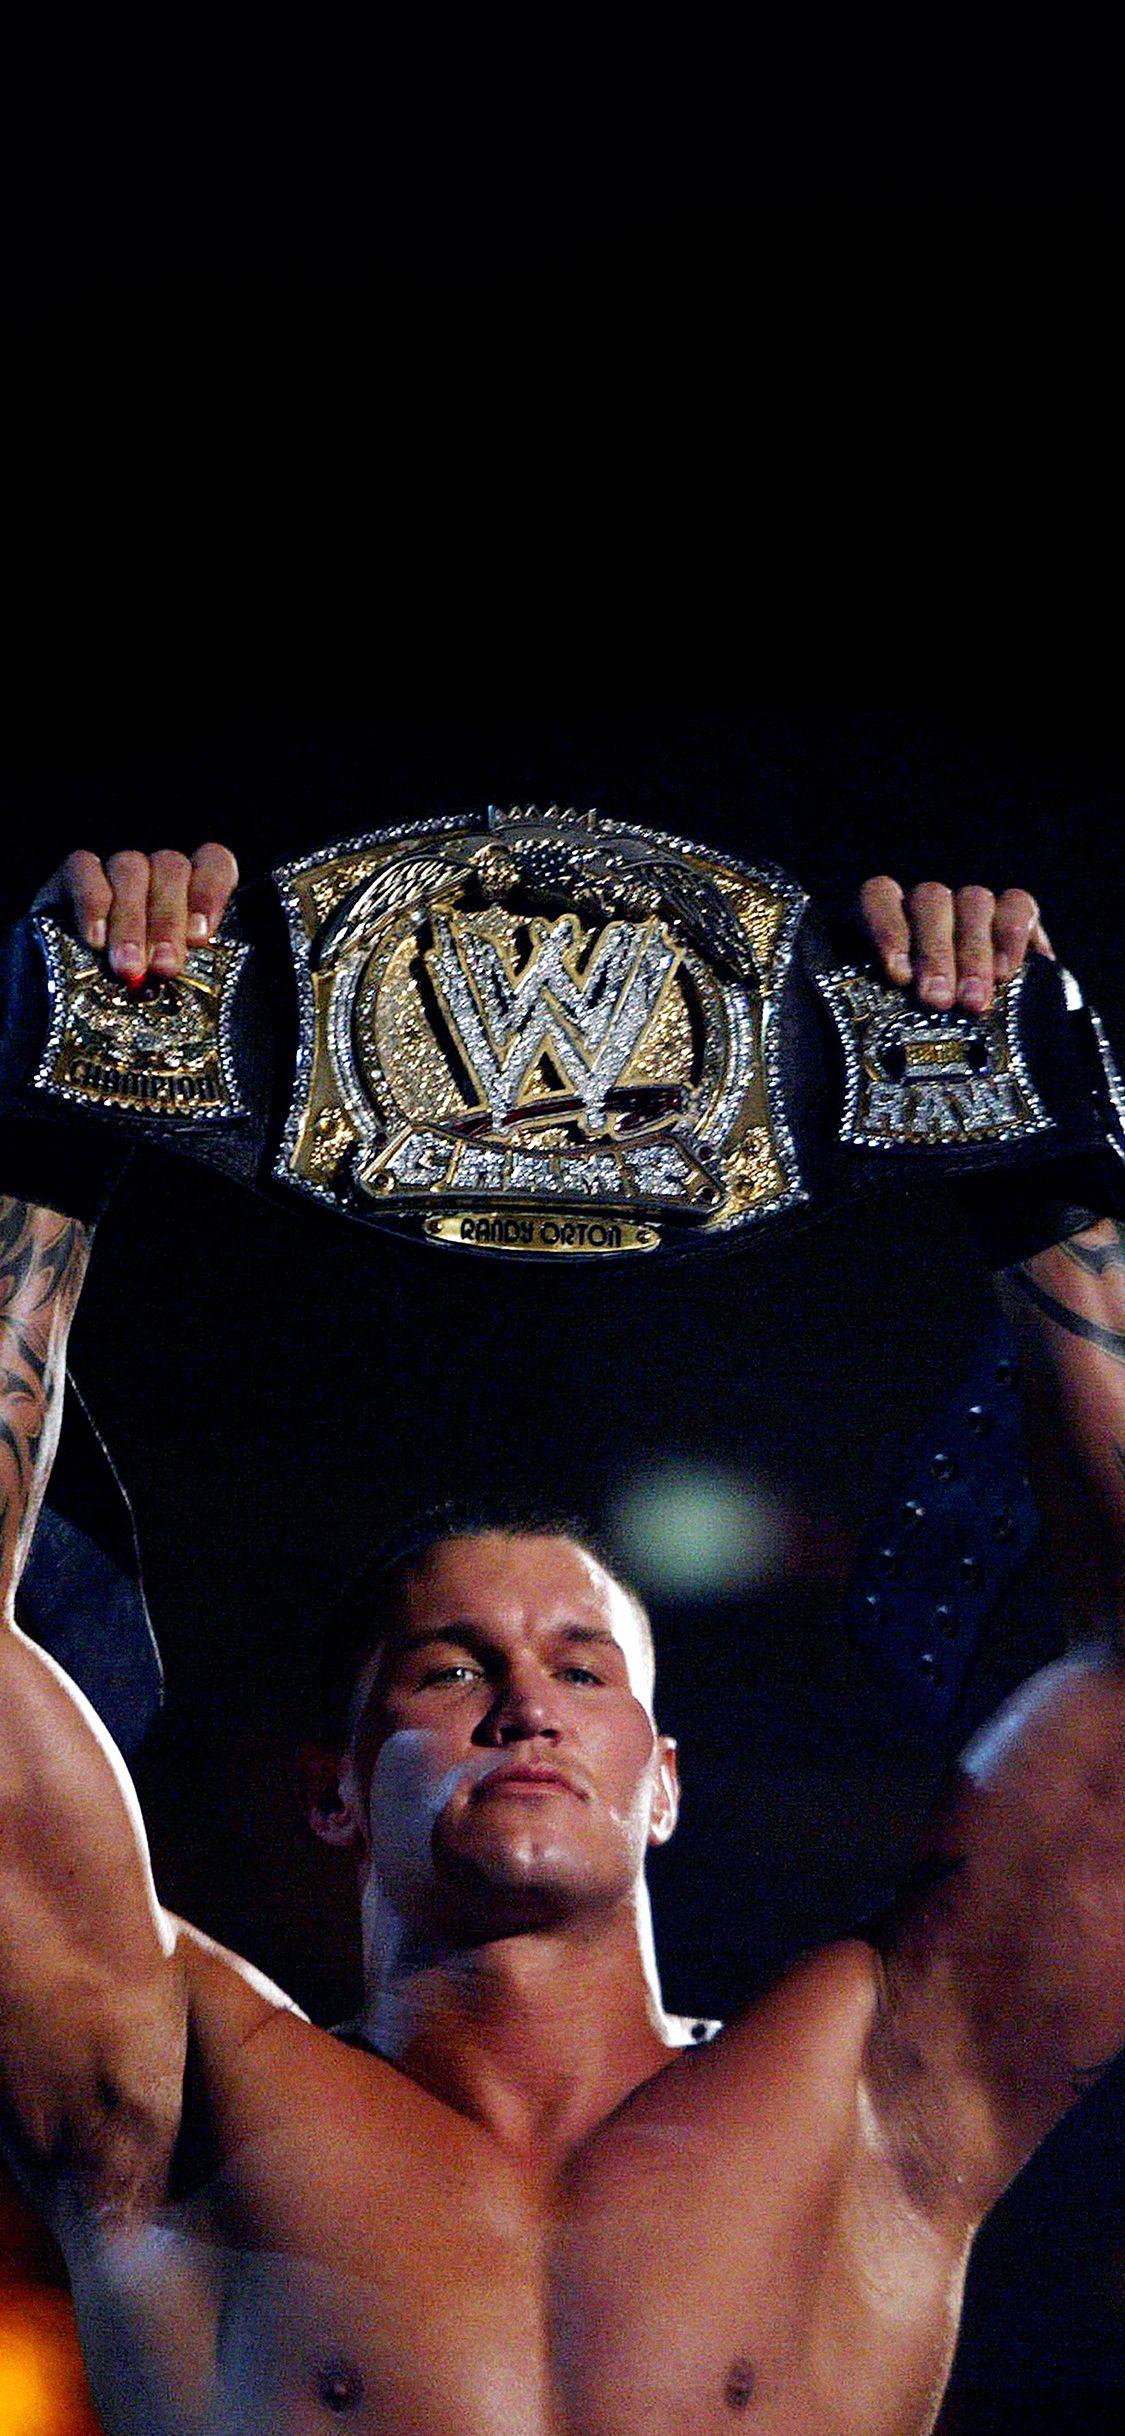 Wallpaper Randy Orton With Belt Wwe